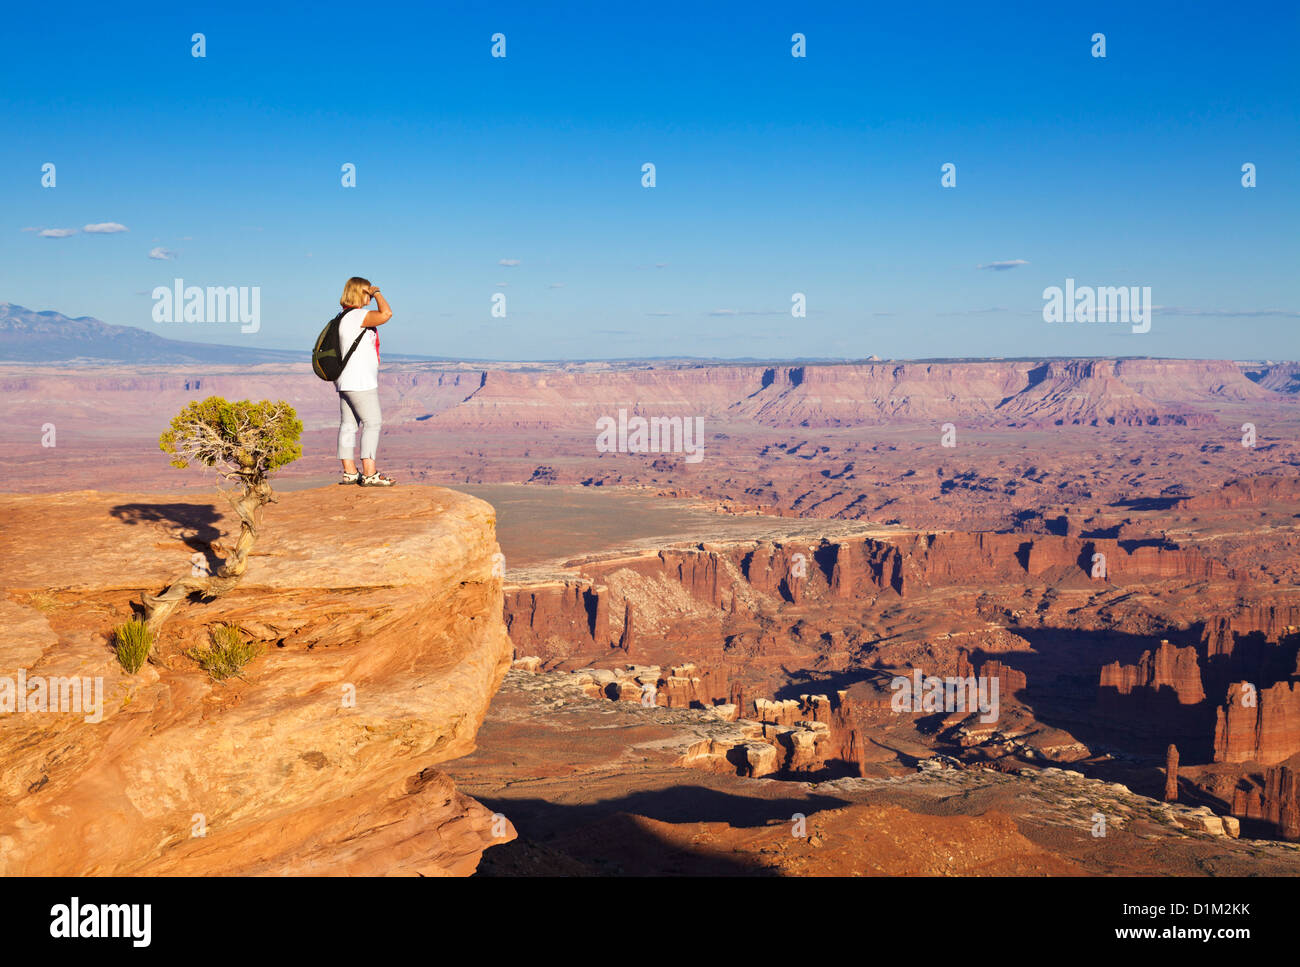 Frau Wanderer stehend auf Grand View Point mit Blick auf Insel in den Himmel, Canyonlands National Park, Utah, Vereinigte Staaten von Amerika Stockfoto